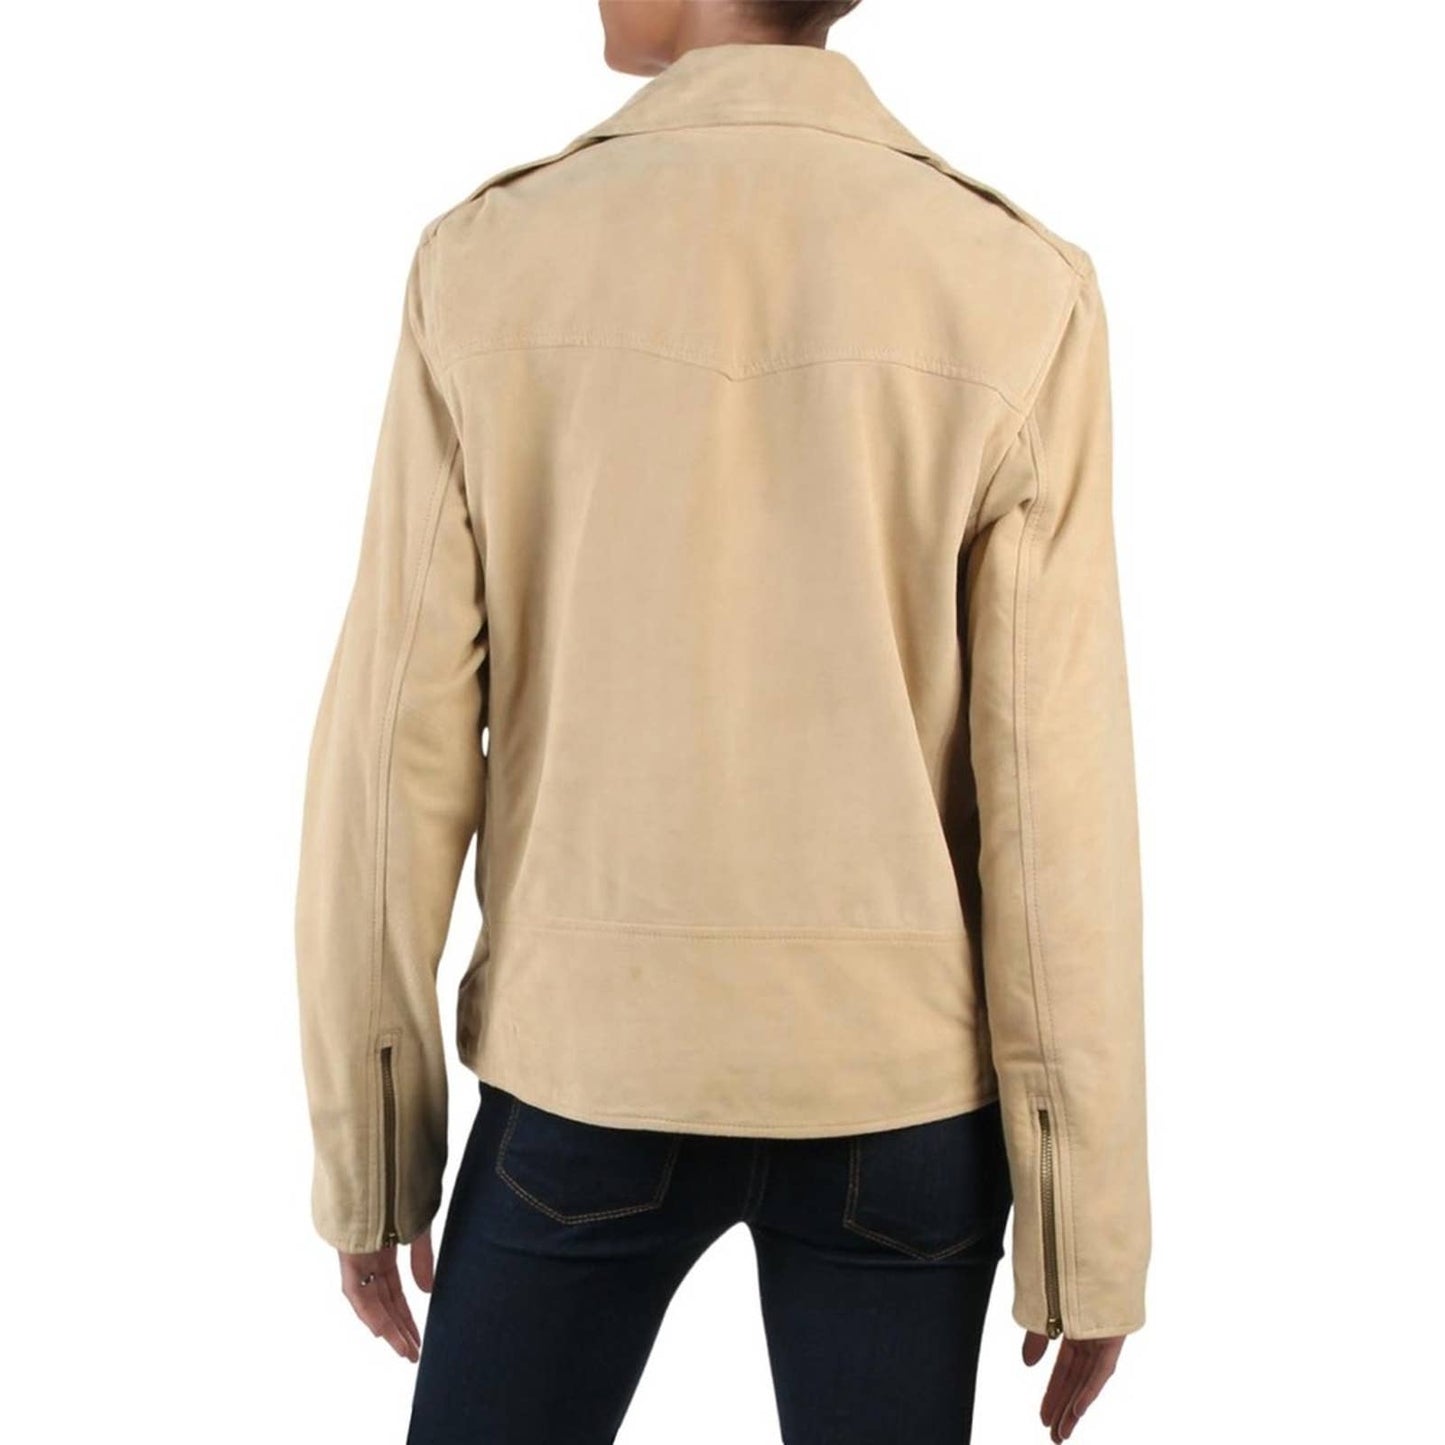 Ralph Lauren Suede Moto Jacket, Tan Camel, Size 18, NWT!!